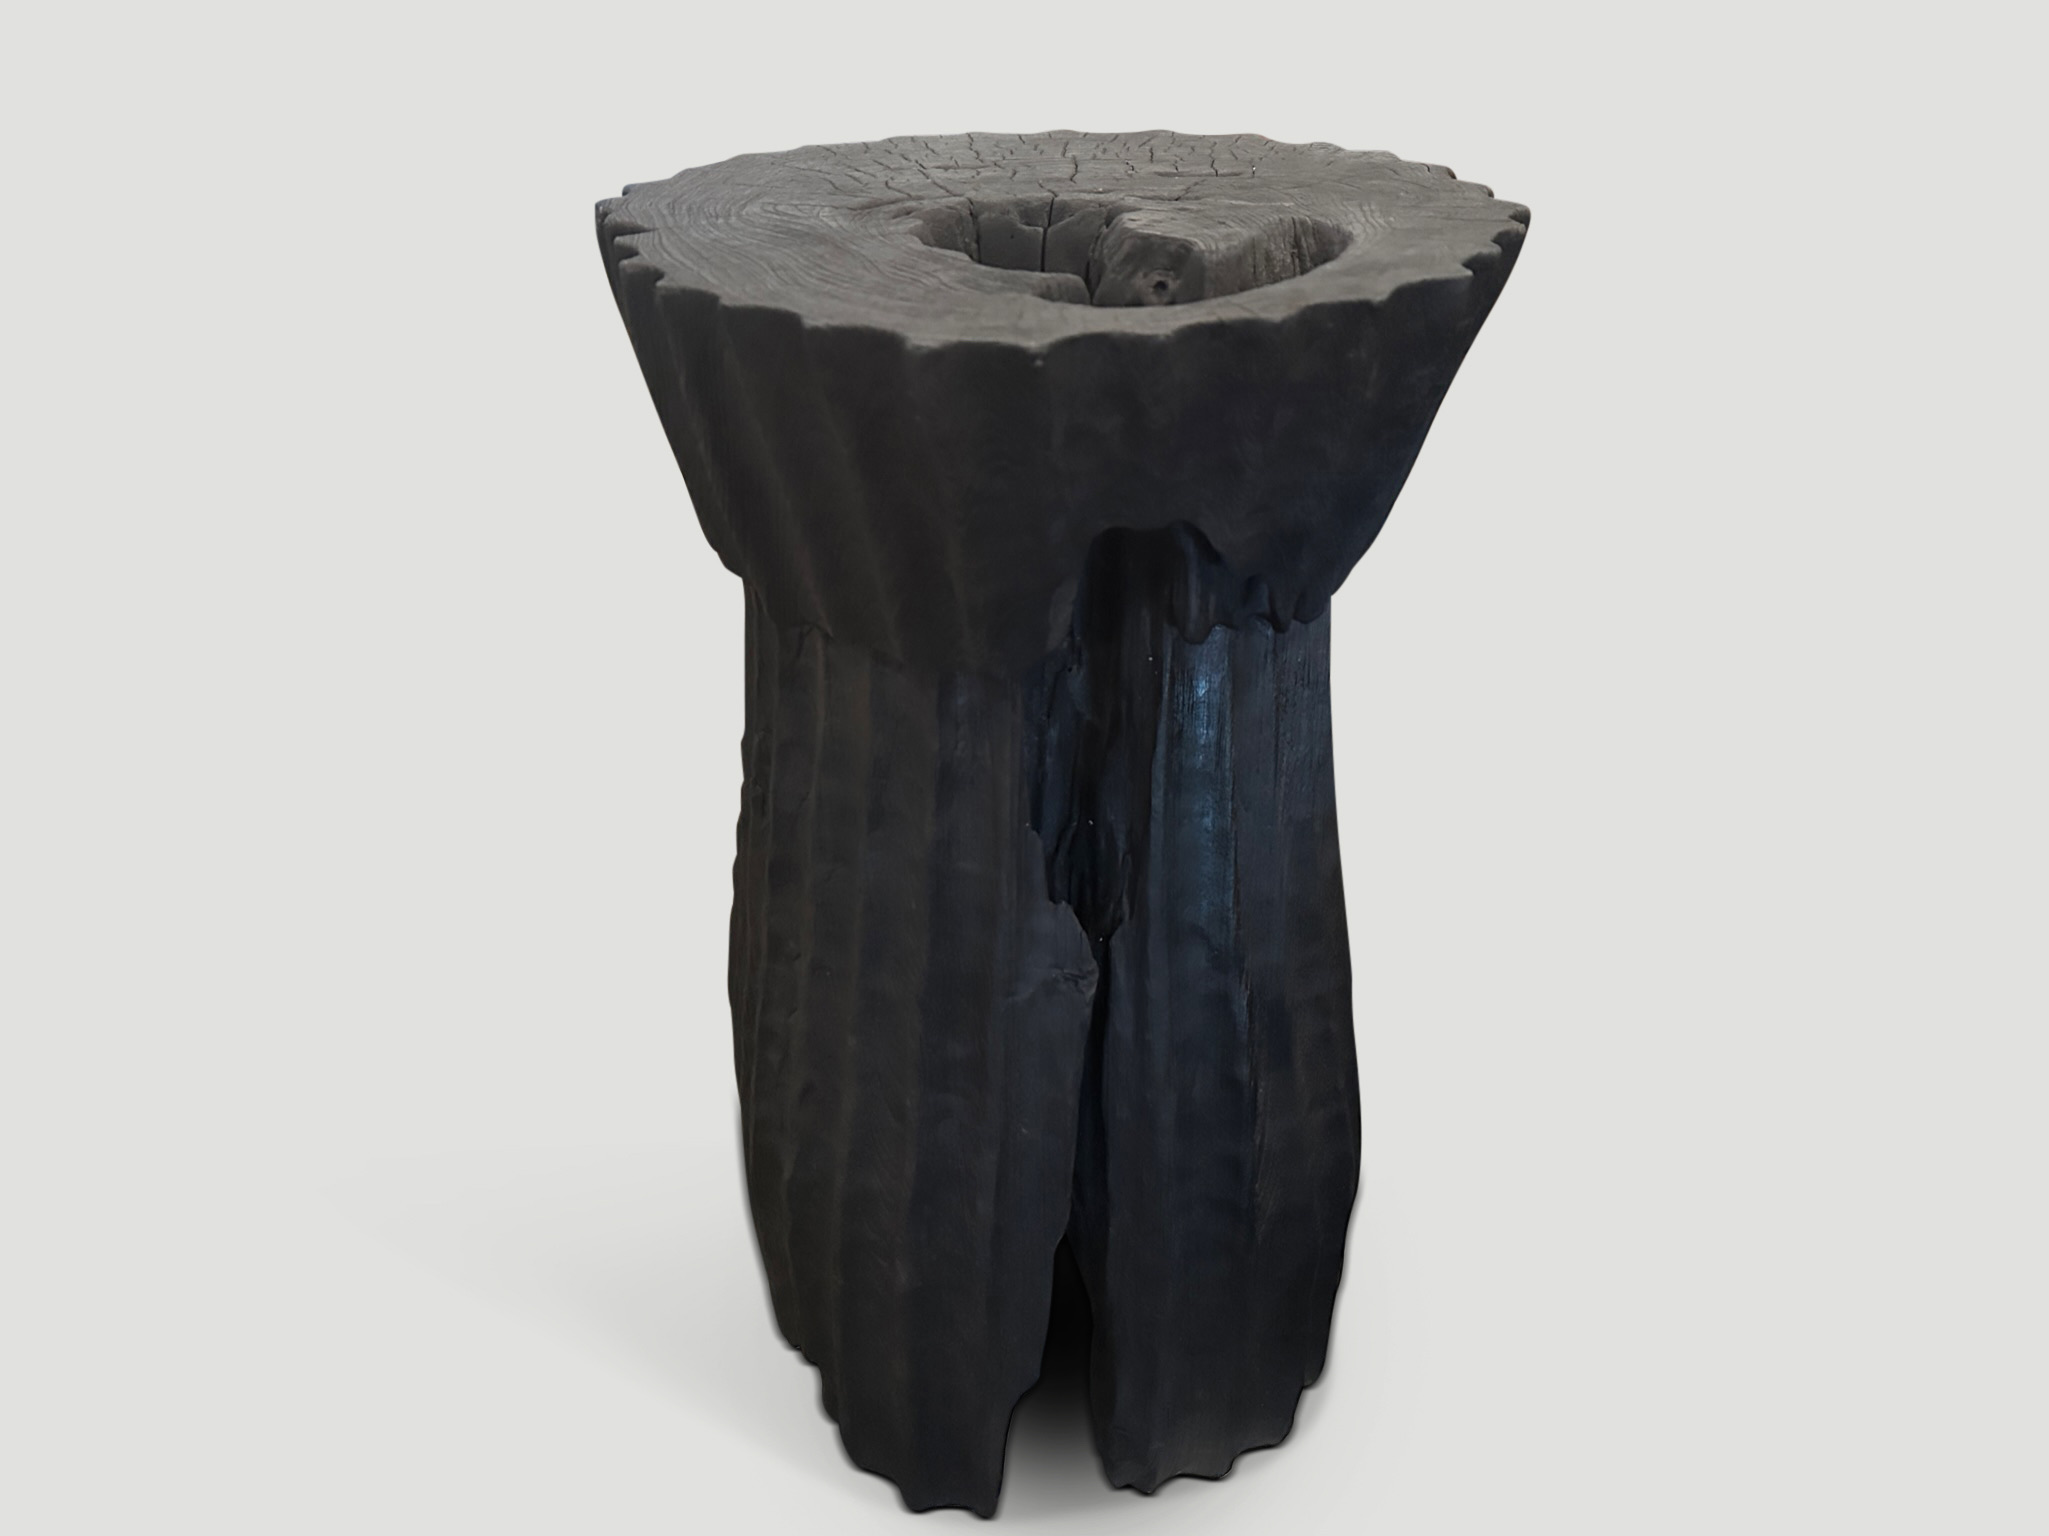 minimalist charred teak wood side table or pedestal